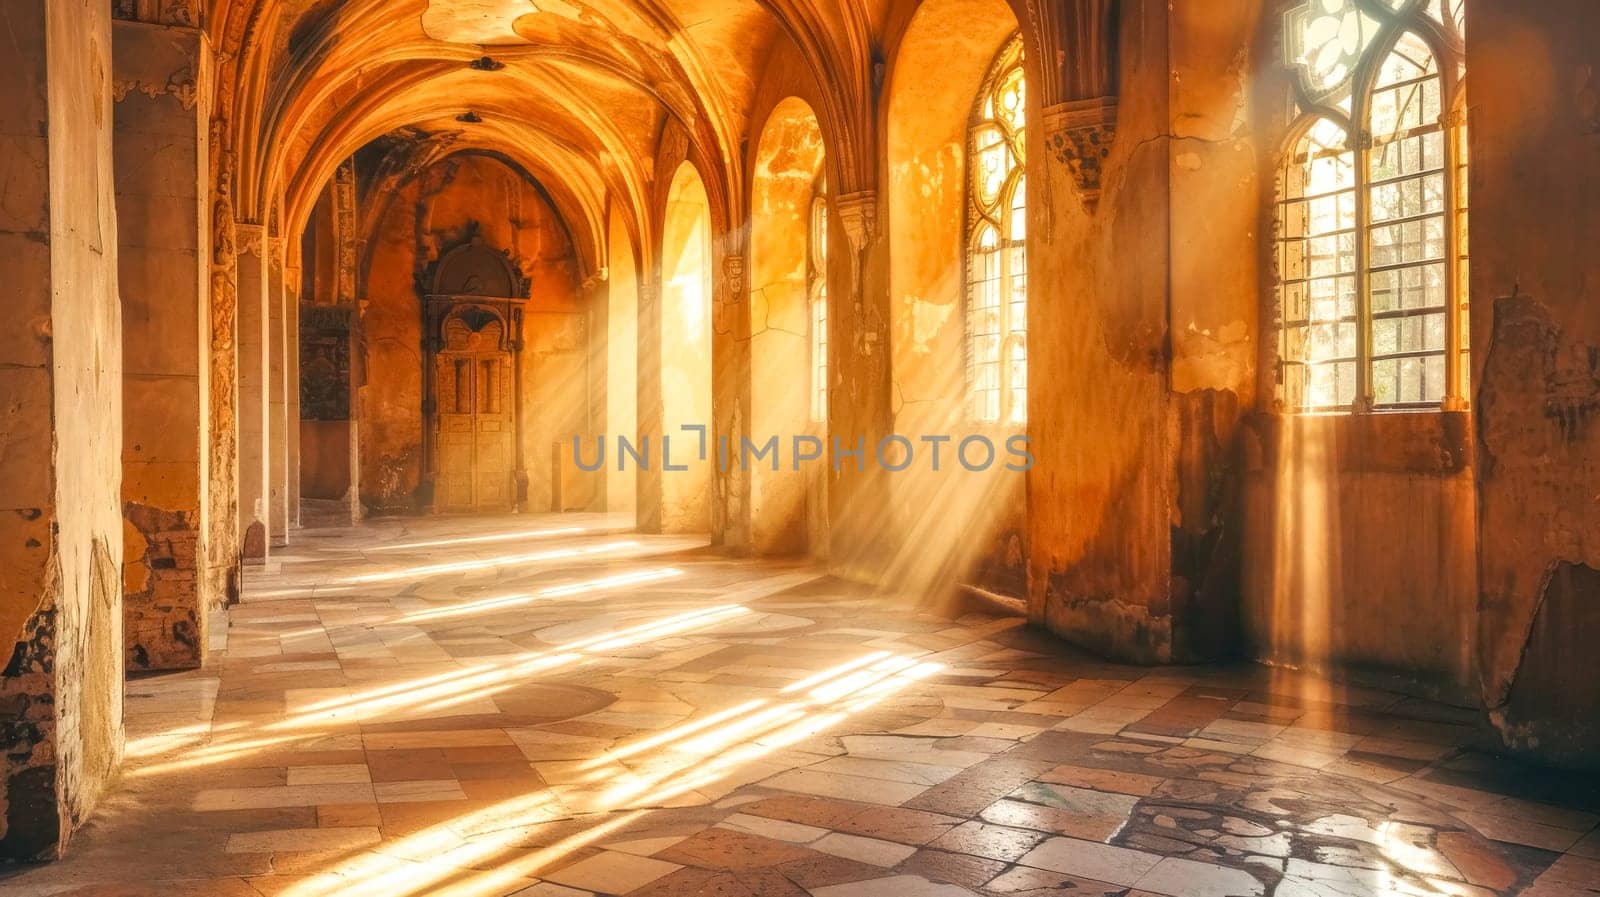 Enchanting sunbeams in gothic church hallway by Edophoto